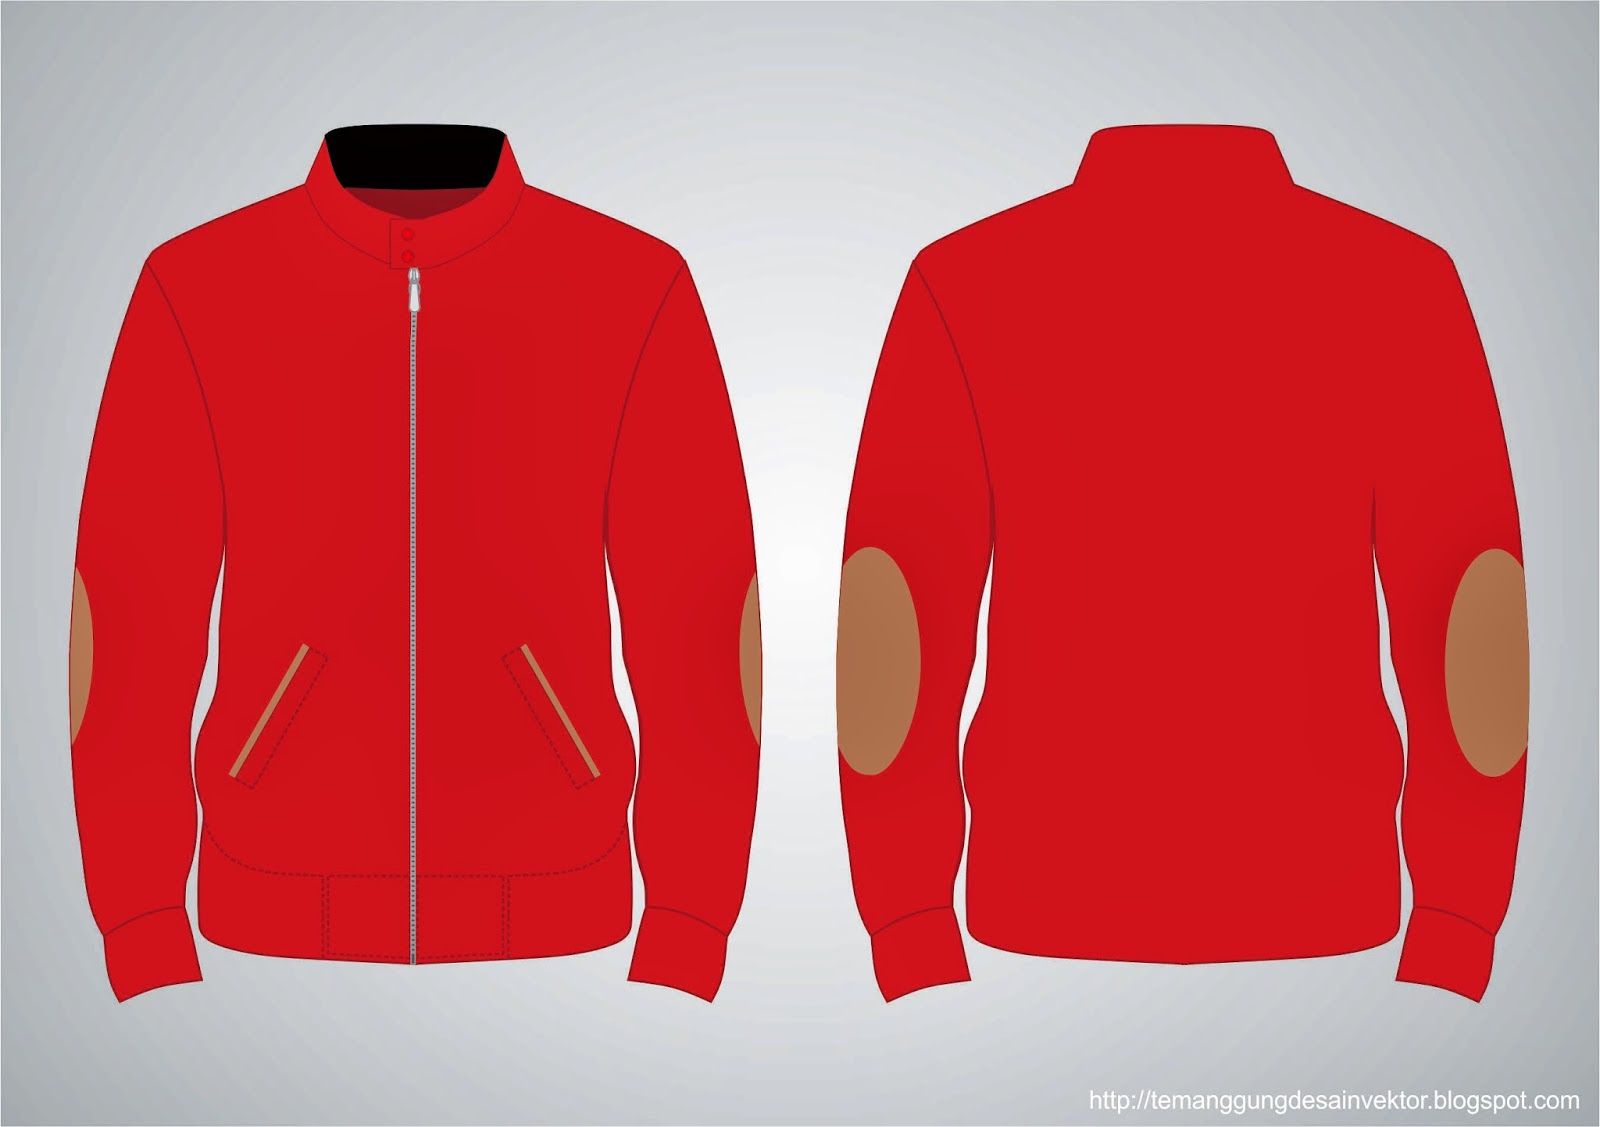  Desain  Jaket  Merah Terbaru 2014 Temanggung Desain  Vektor 